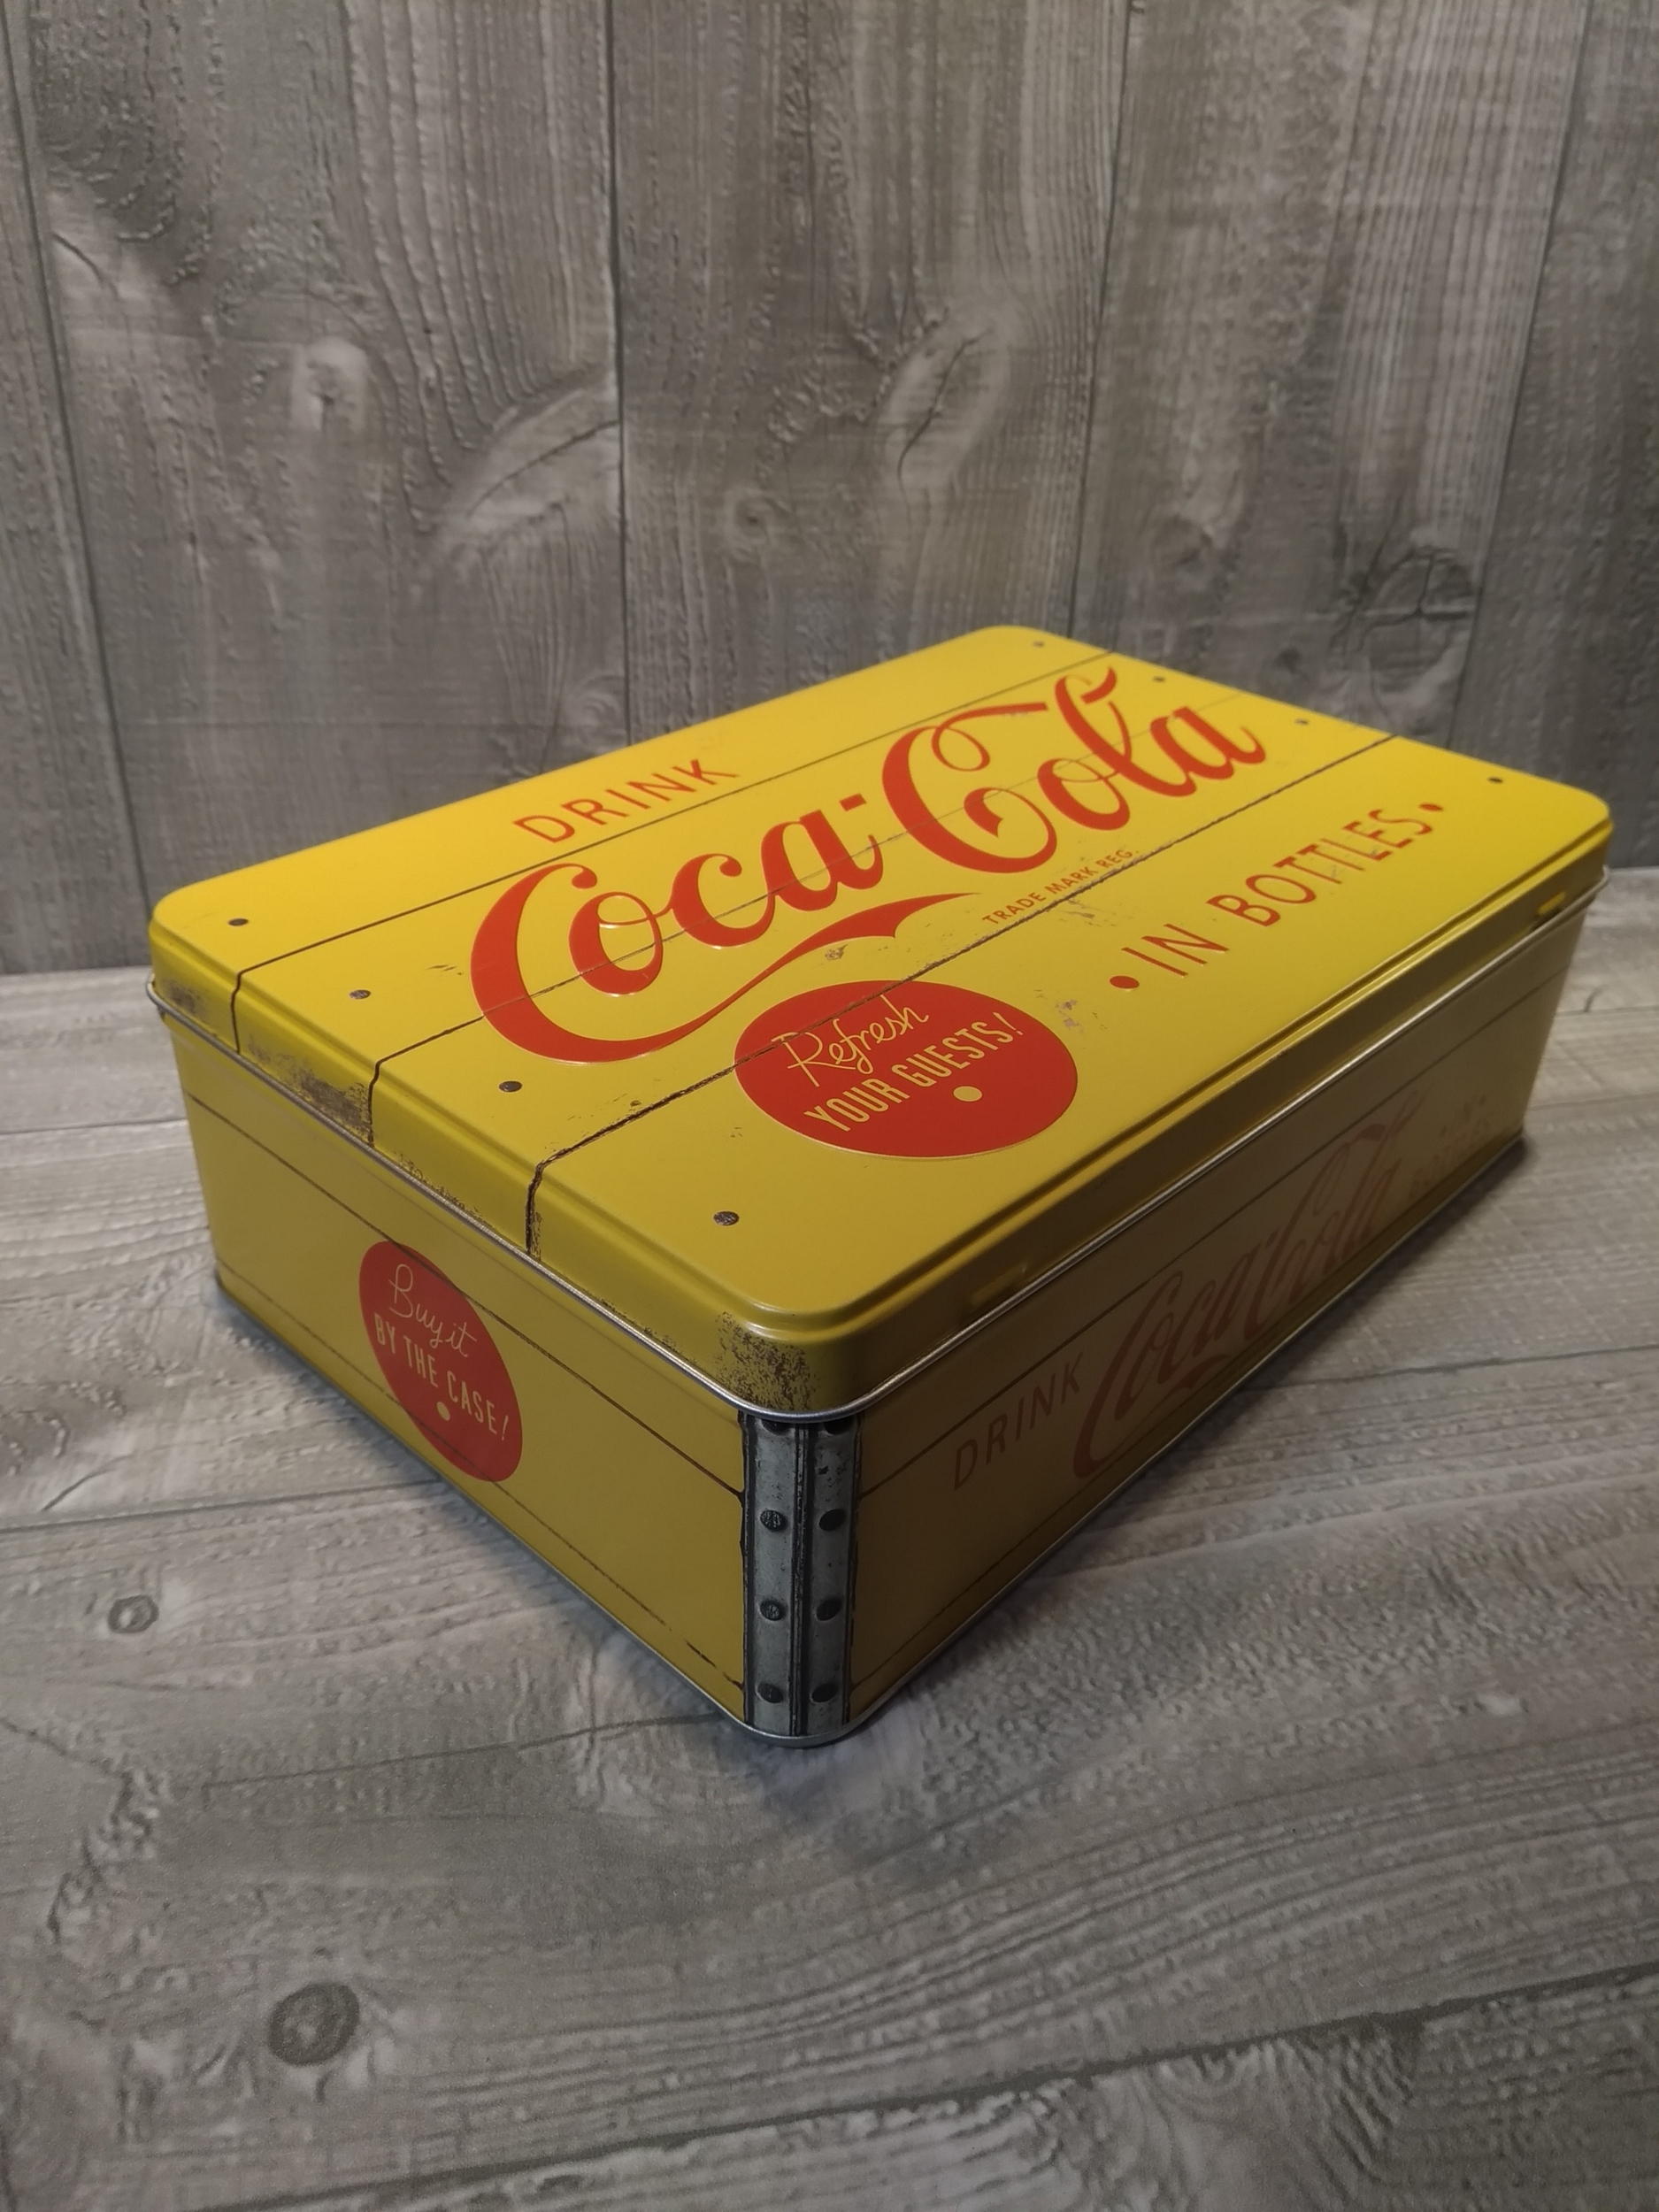 boite métal publicitaire coca-cola